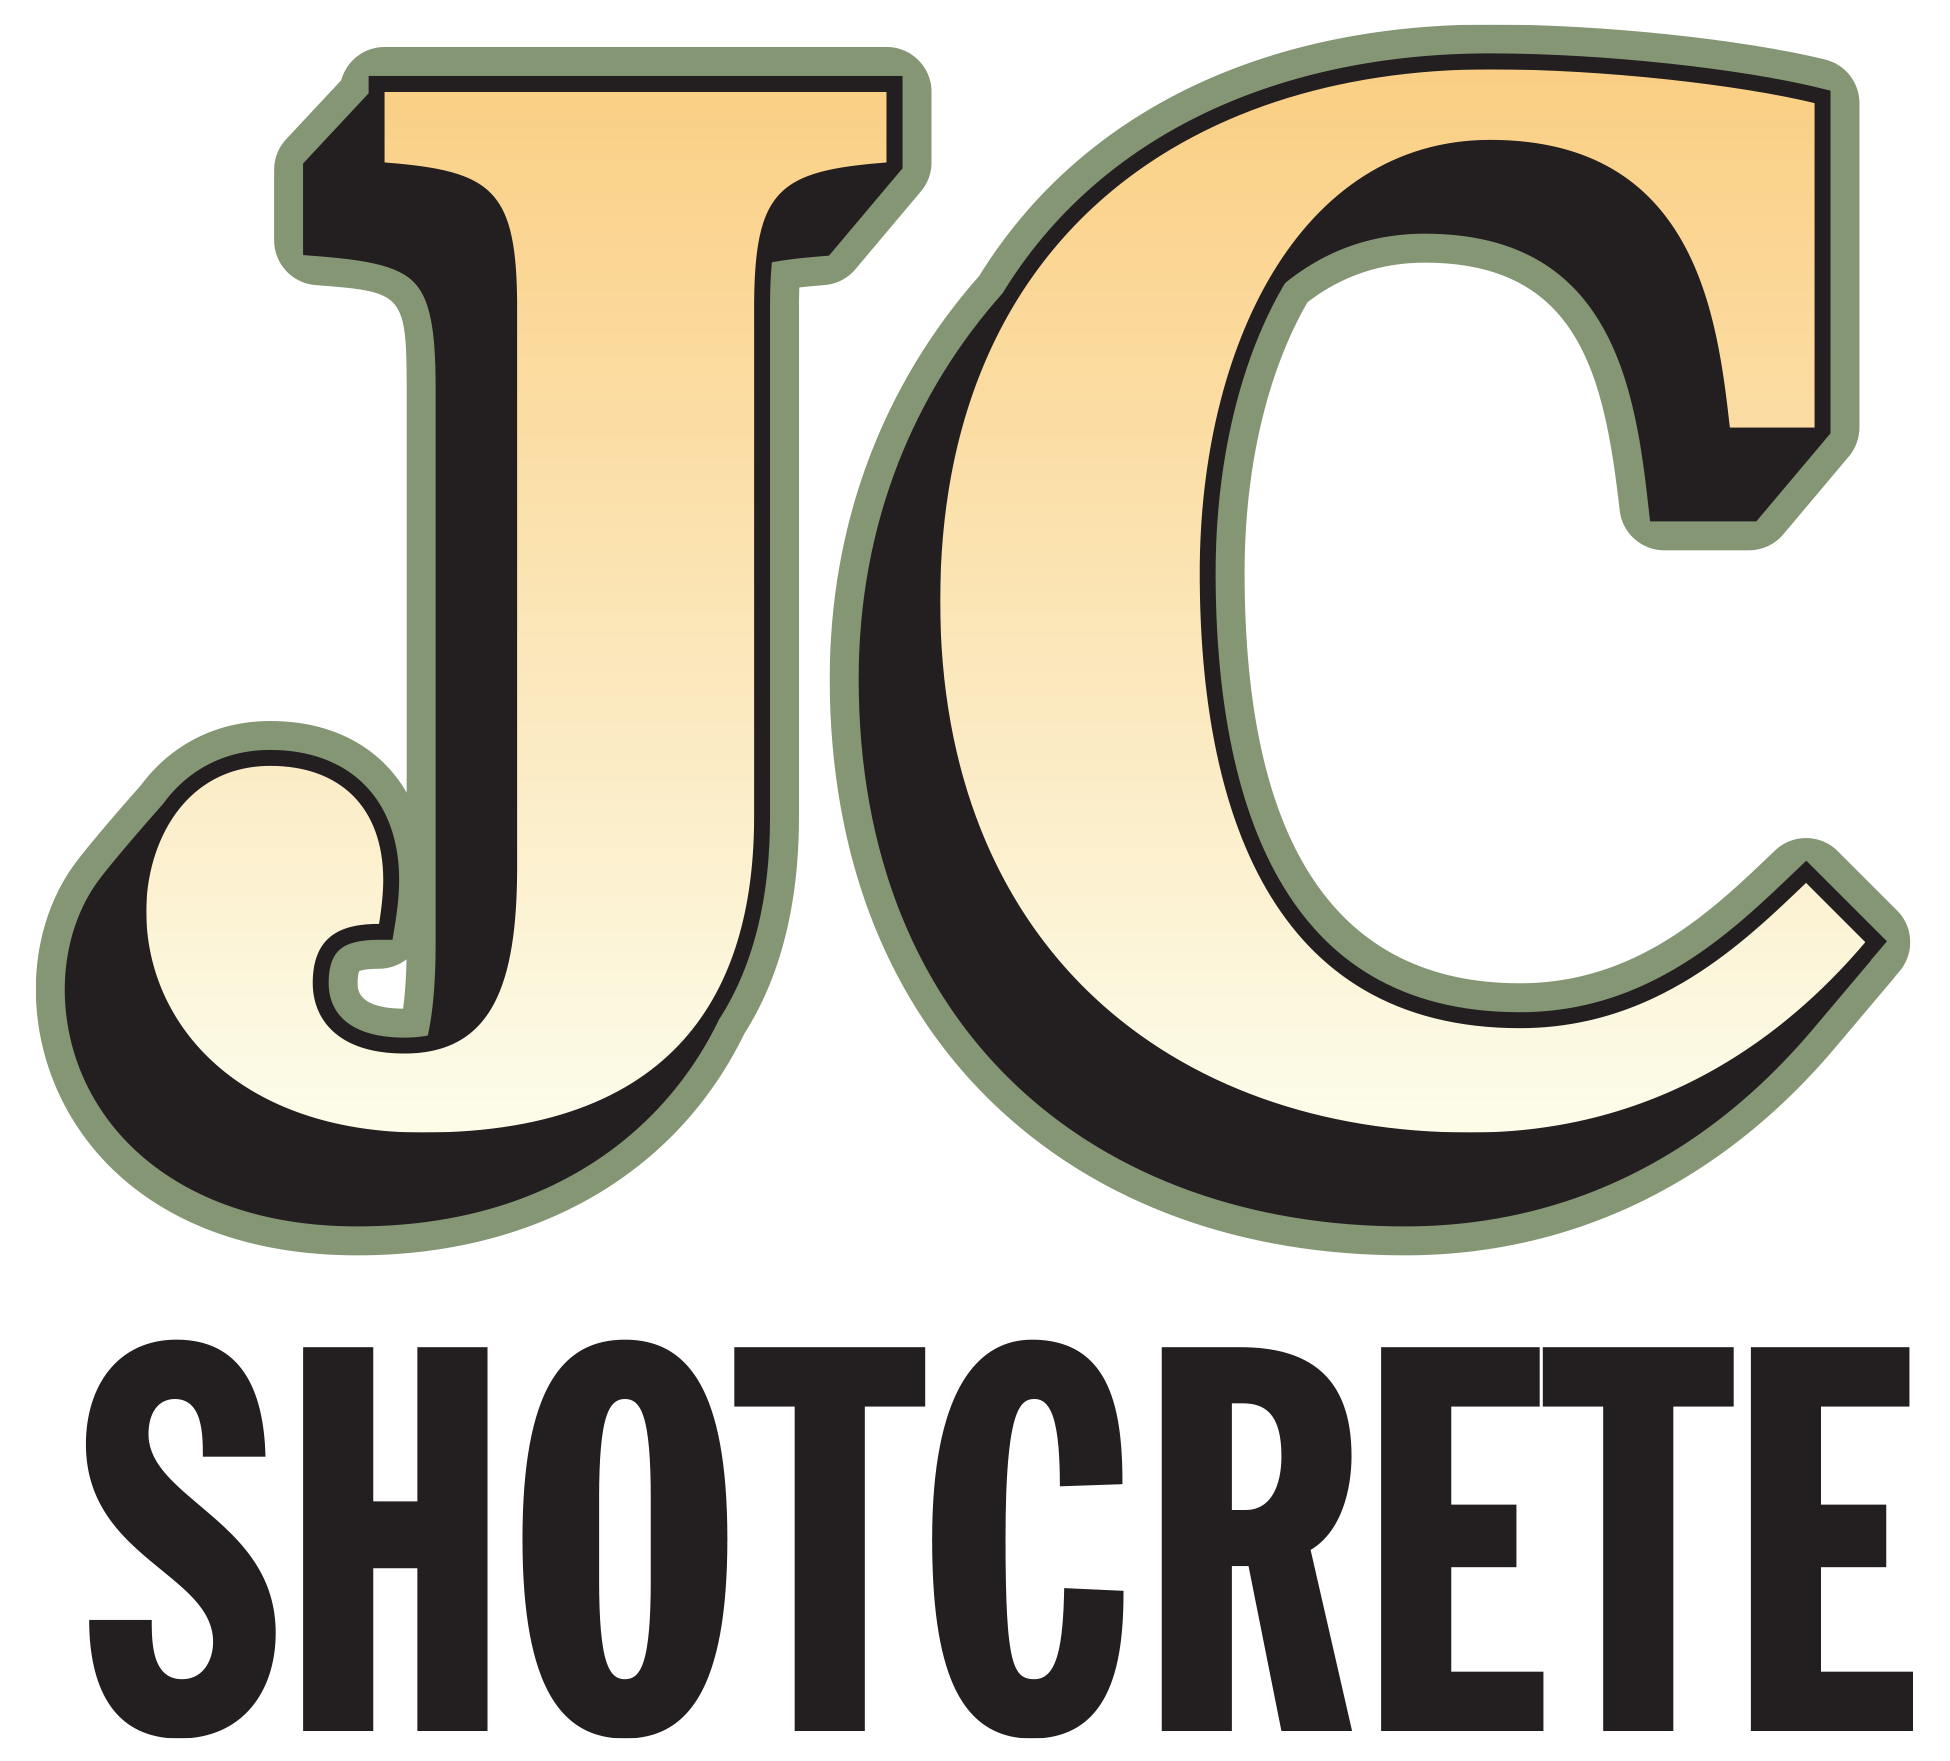 JC Shotcrete